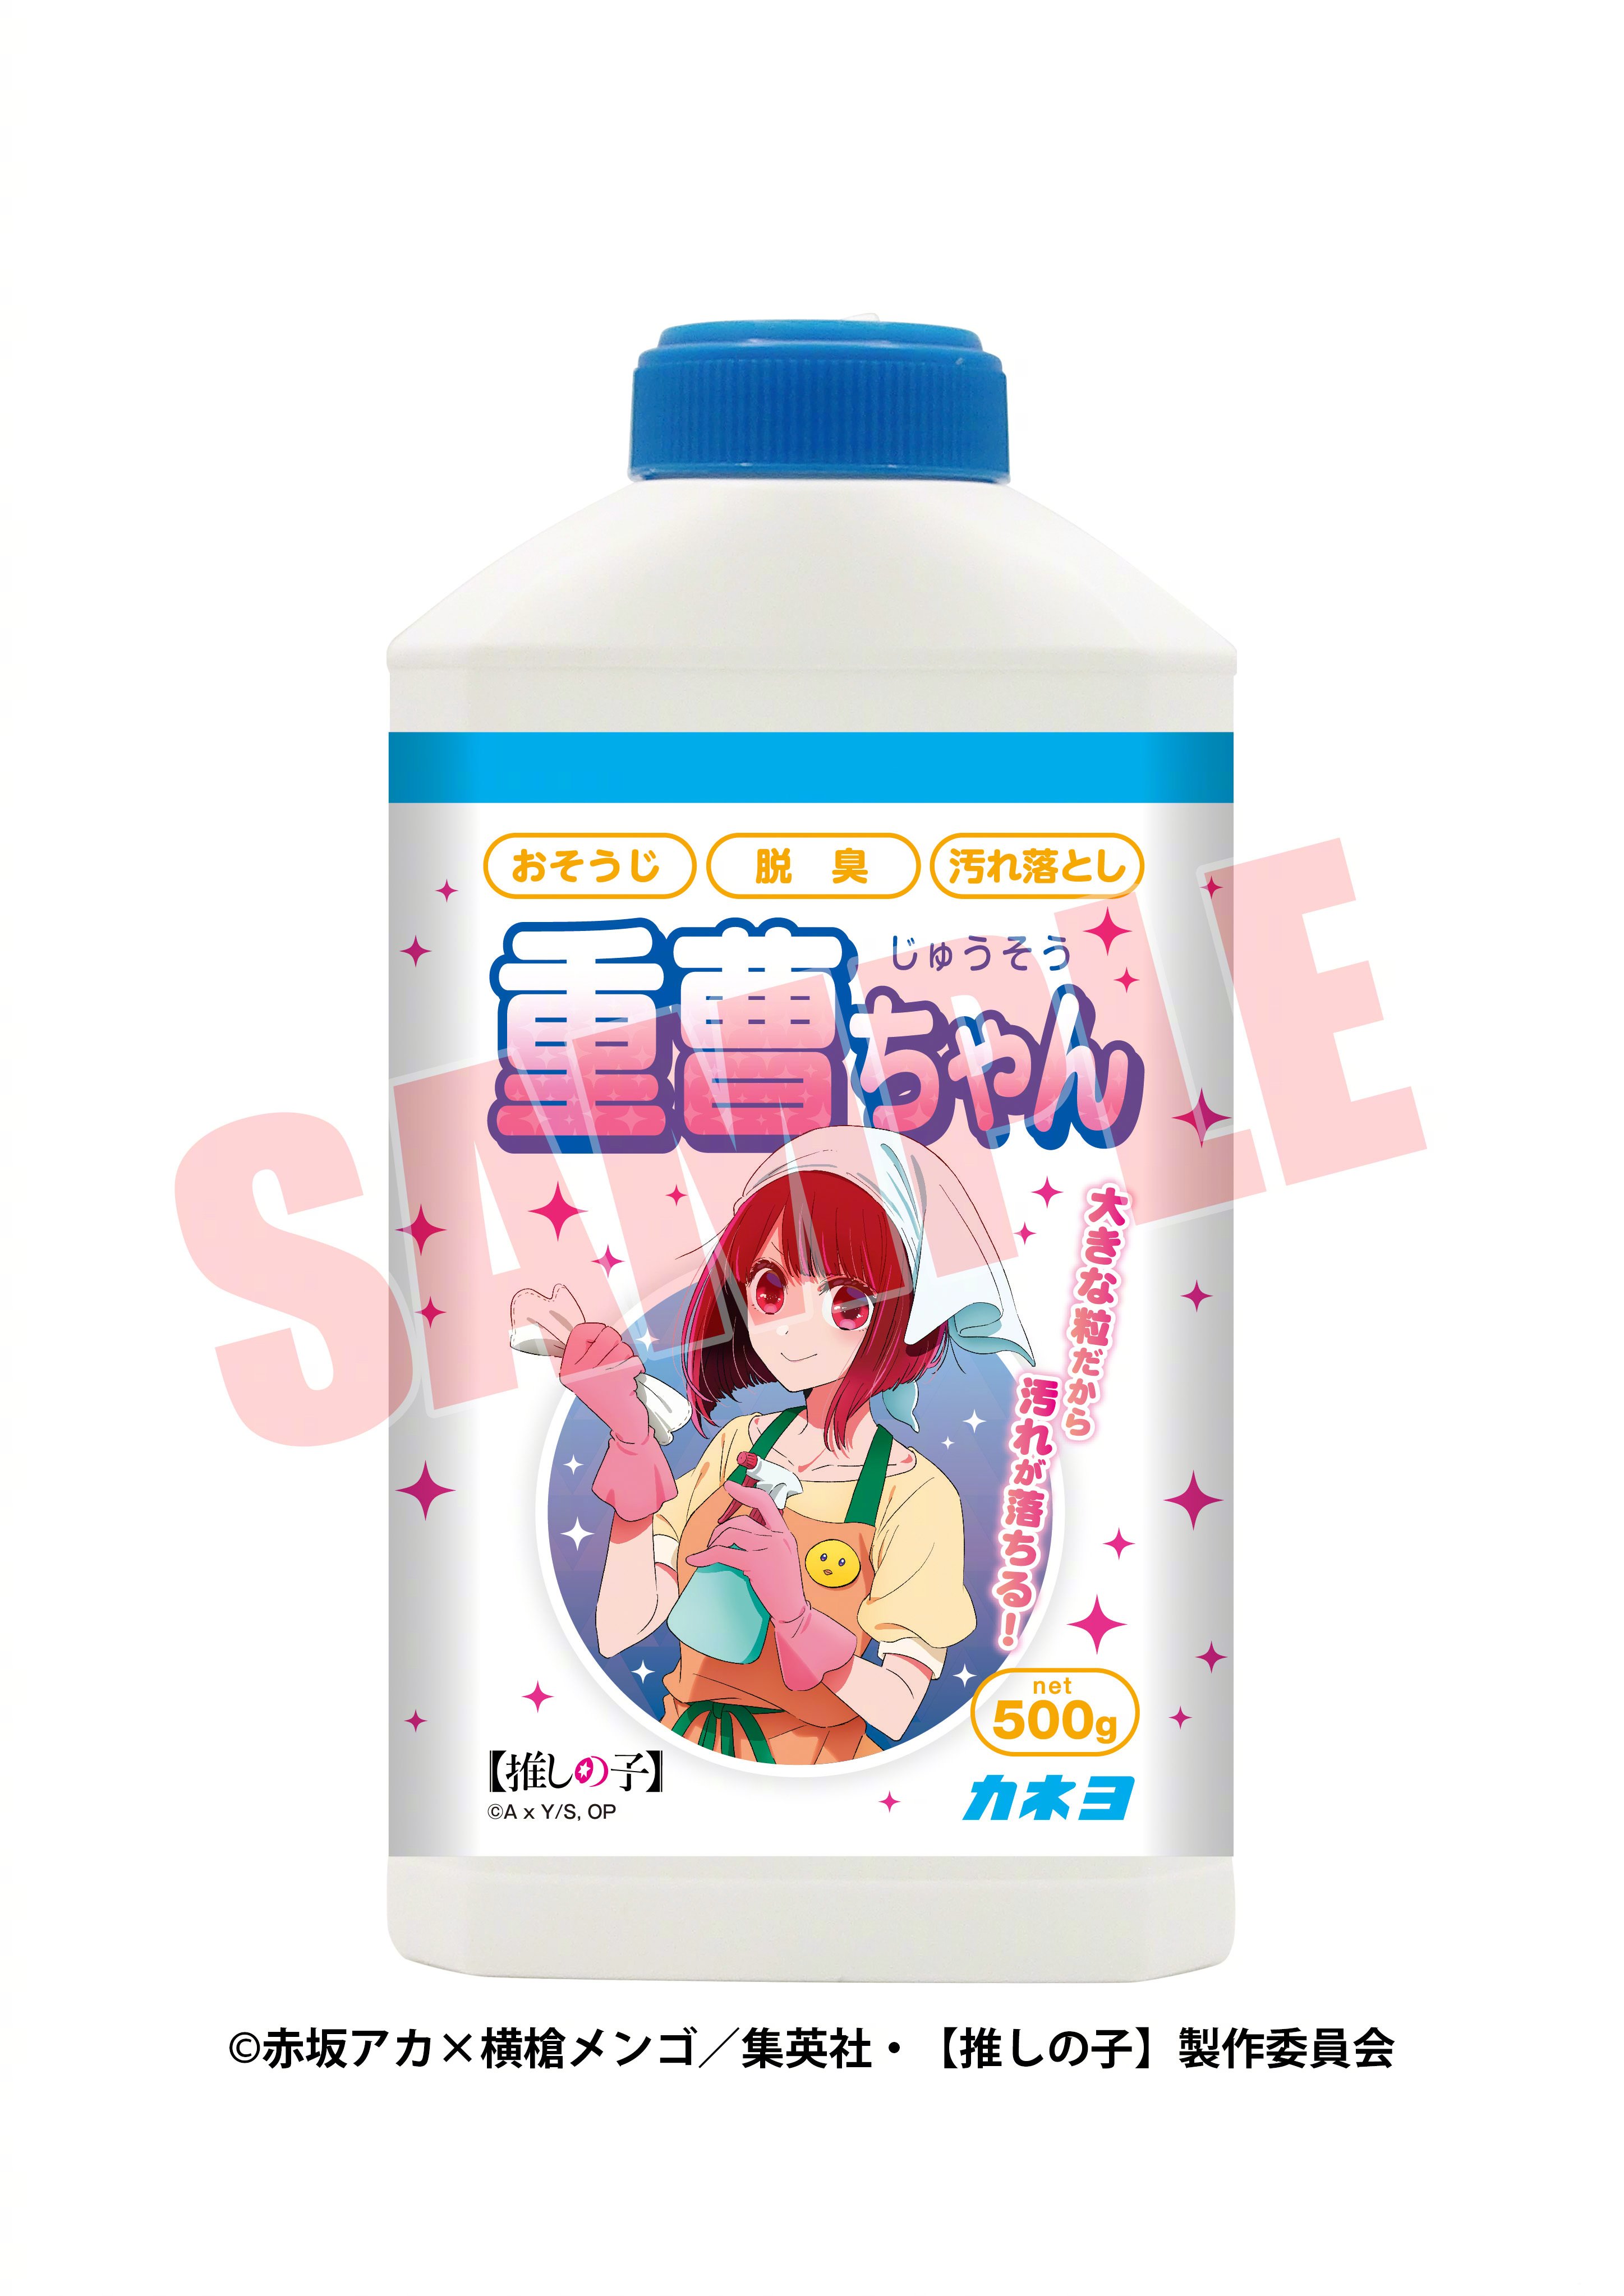 《我推的孩子》与日本清洁剂公司推出的联名小苏打将于7月上旬发售